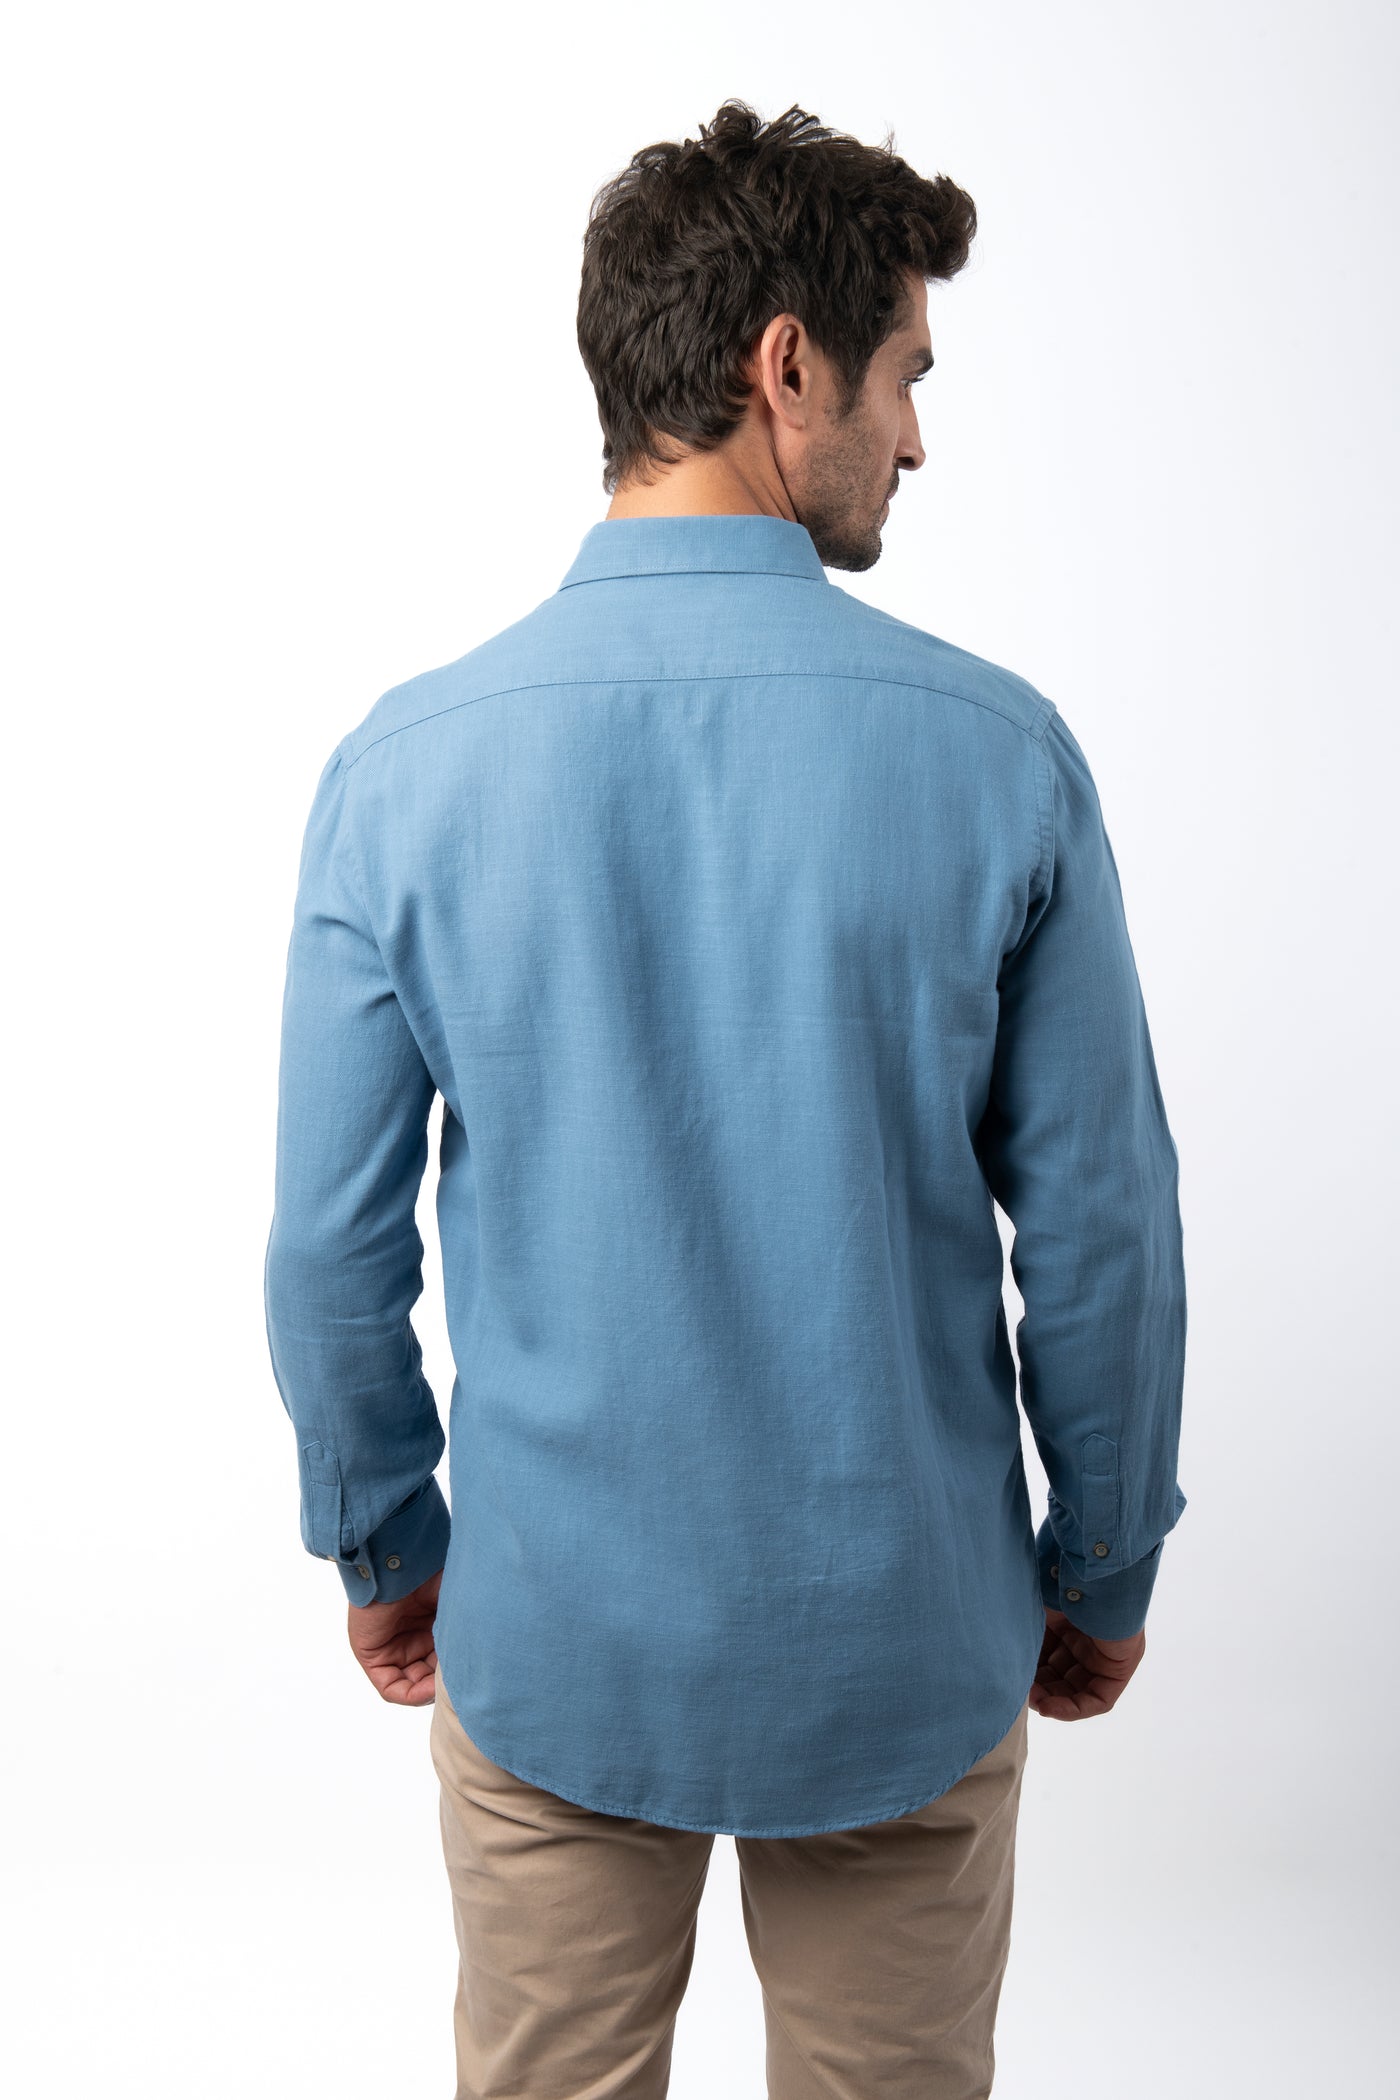 Linen Cotton Look Light Sea Blue Casual Shirt